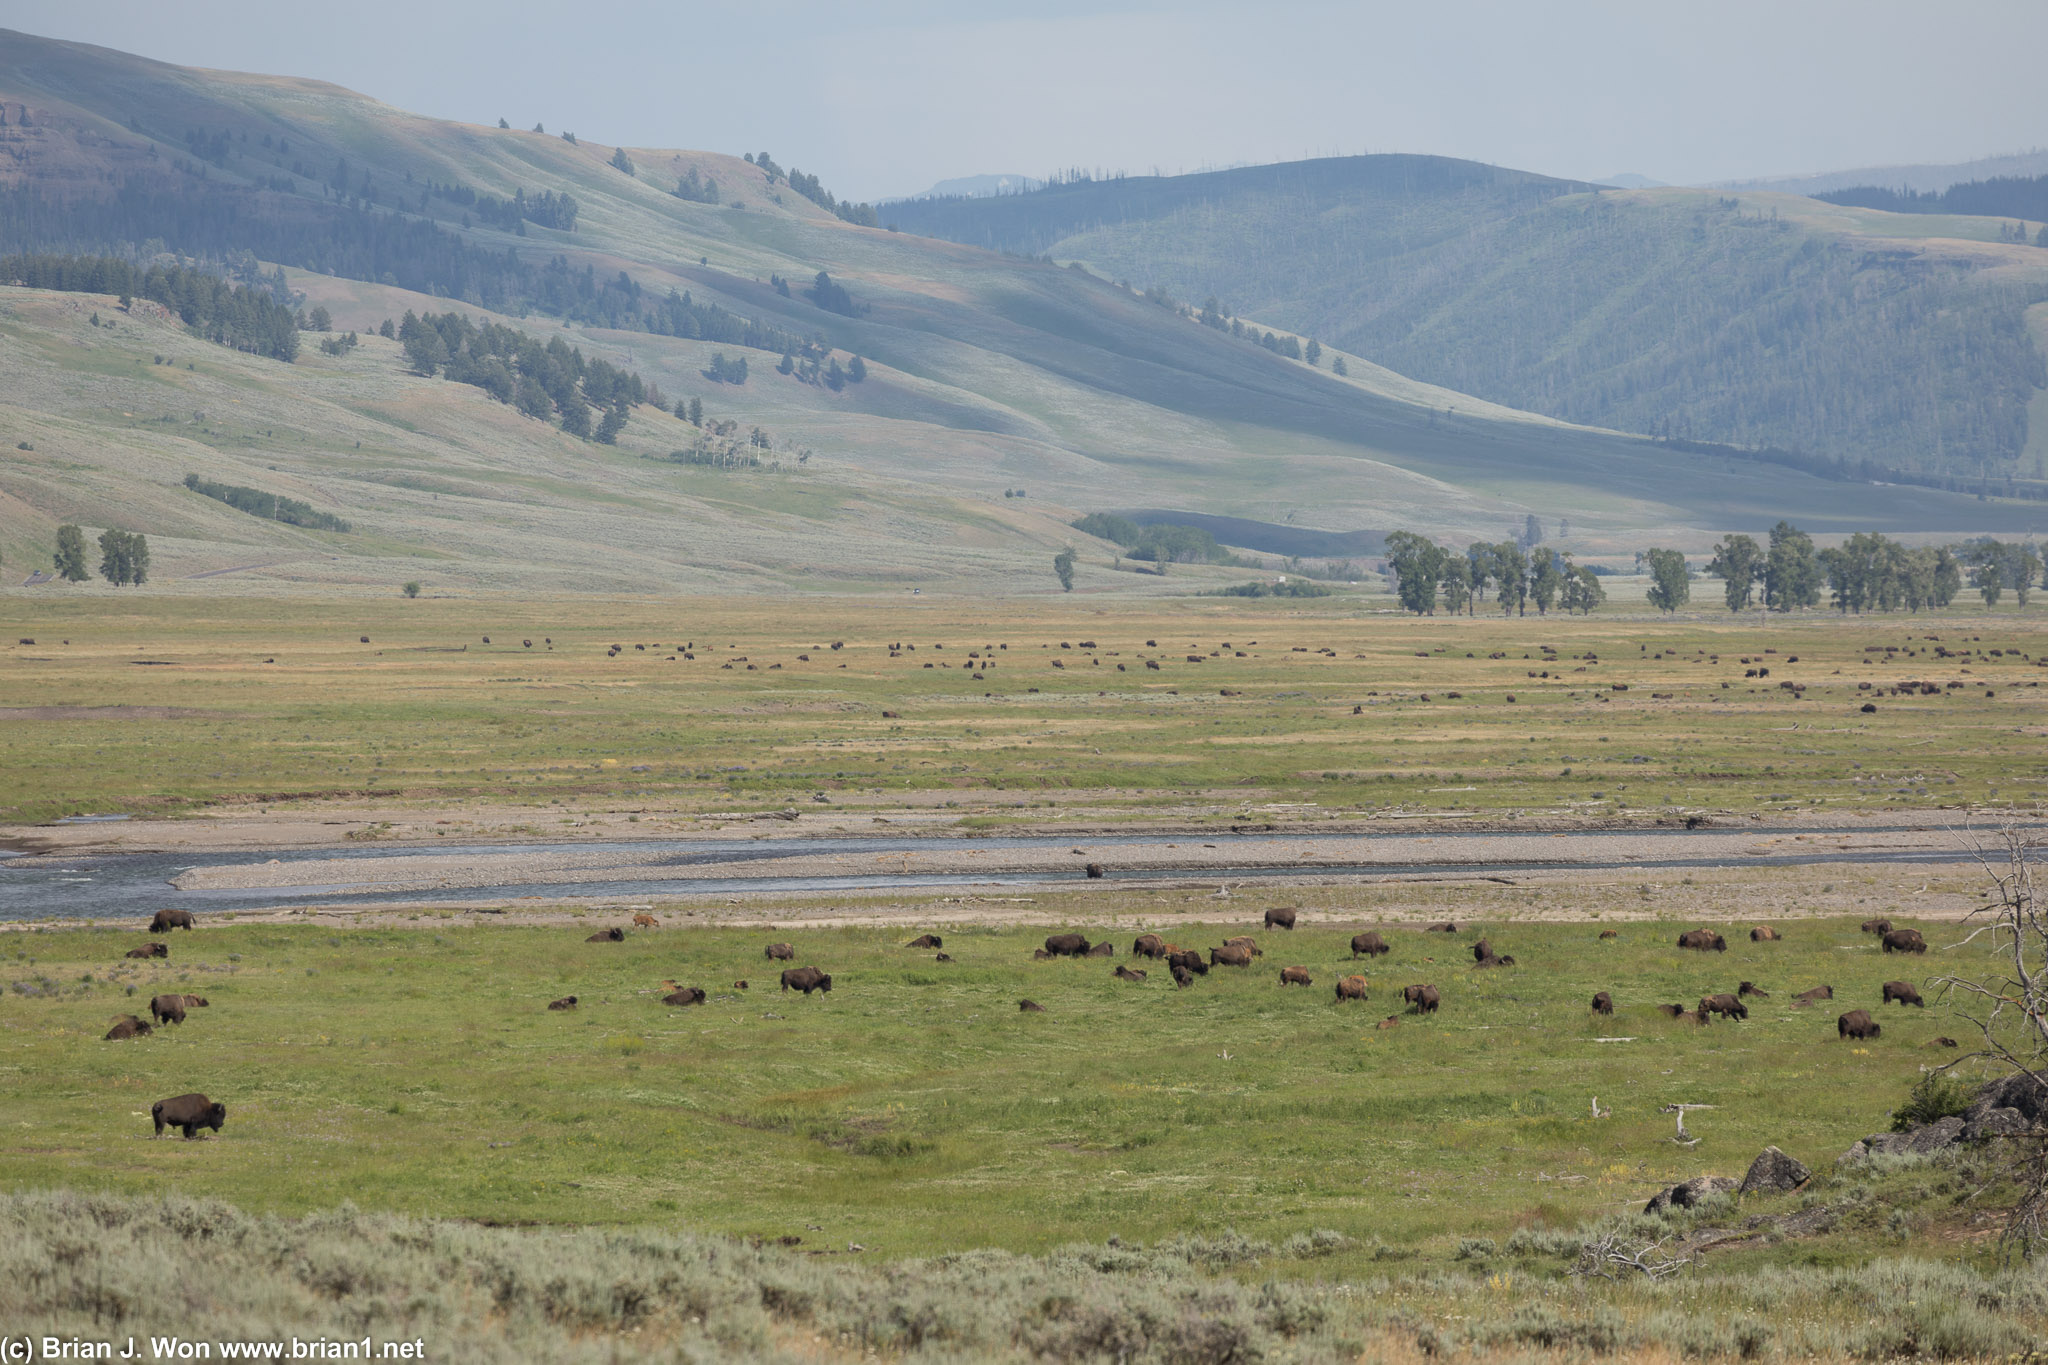 Vast herds of bison.